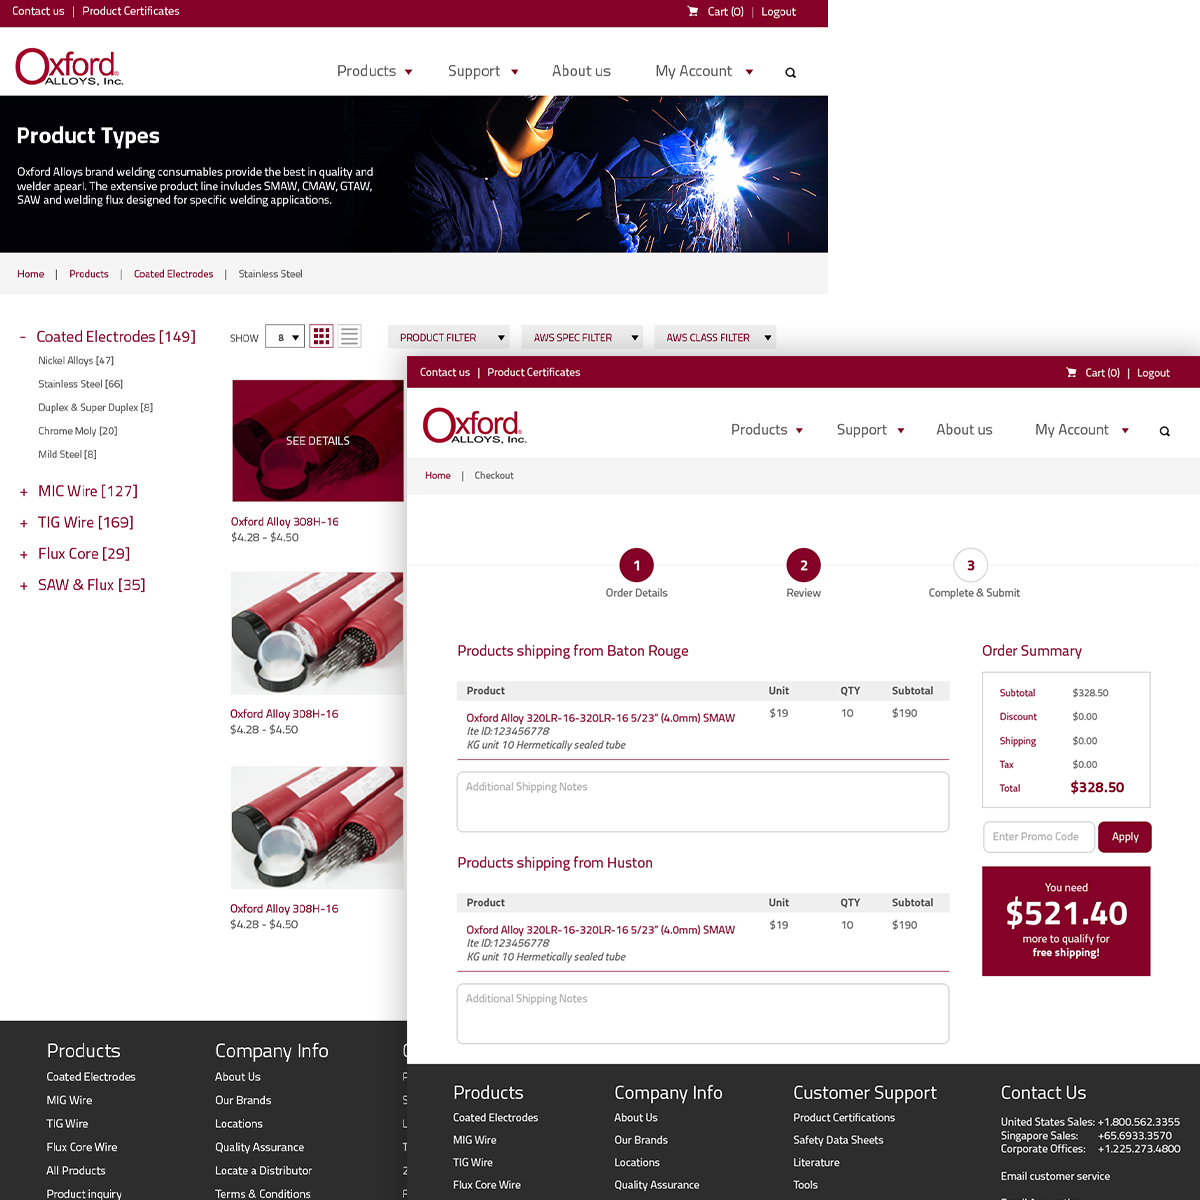 Website Design for Oxford